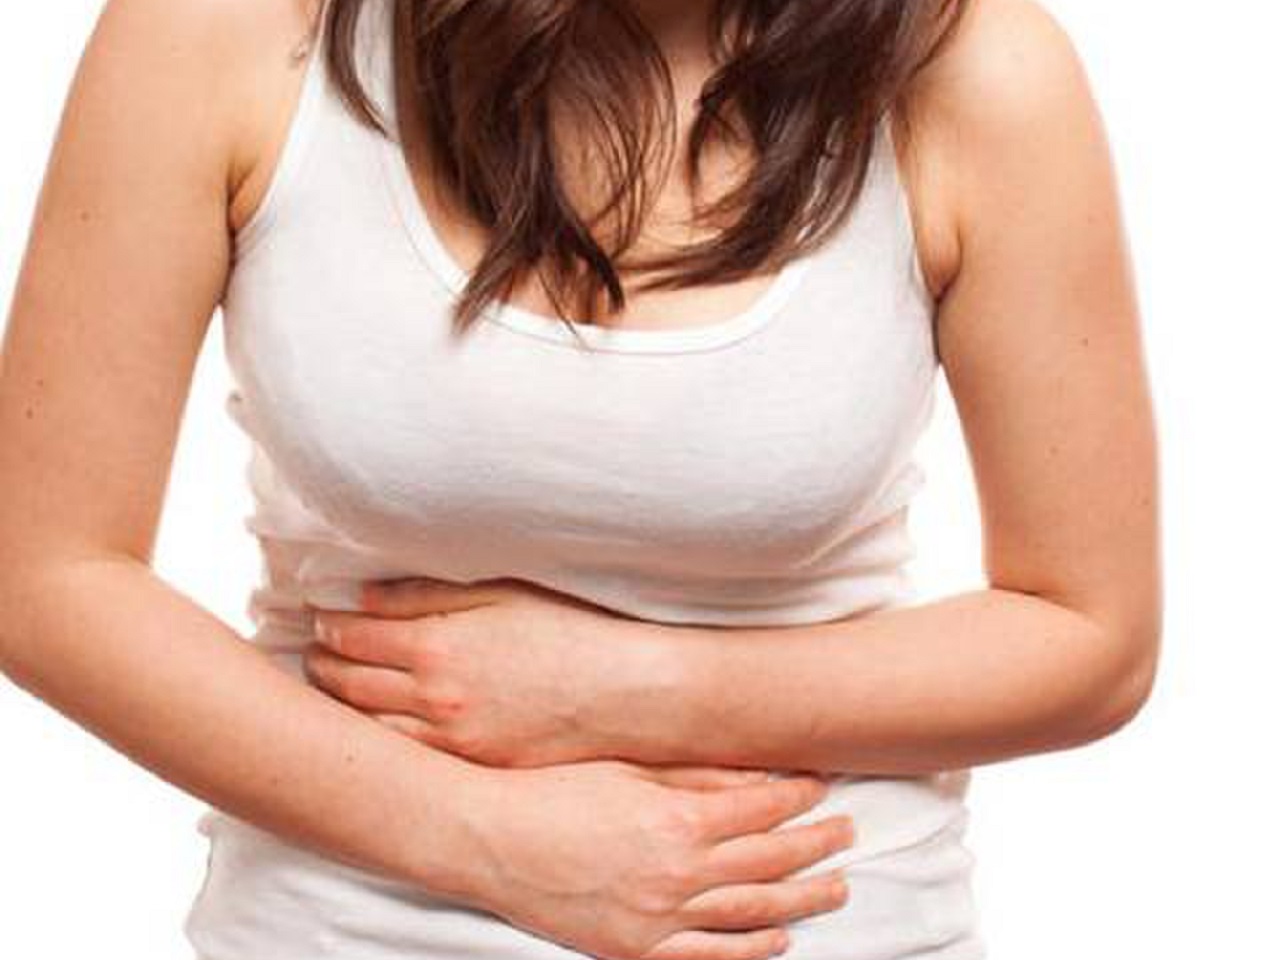 Có những vị trí đau bụng nào có thể là tín hiệu cảnh báo cho sự cấp cứu?
